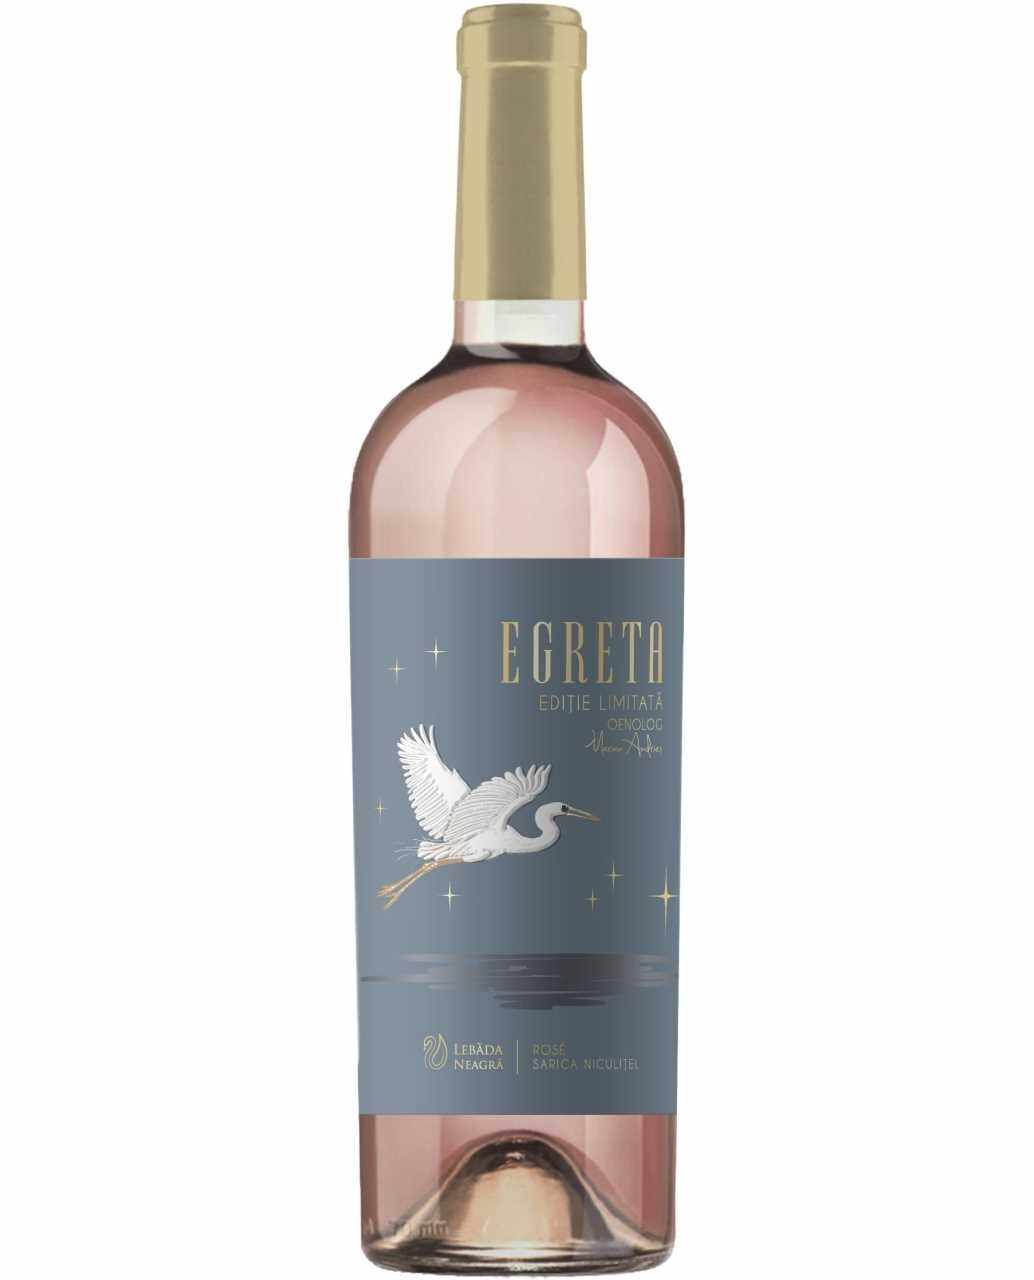 Vin rose - Lebada Neagra, Egreta, Merlot, Sec, 2019, Editie limitata | Lebada neagra